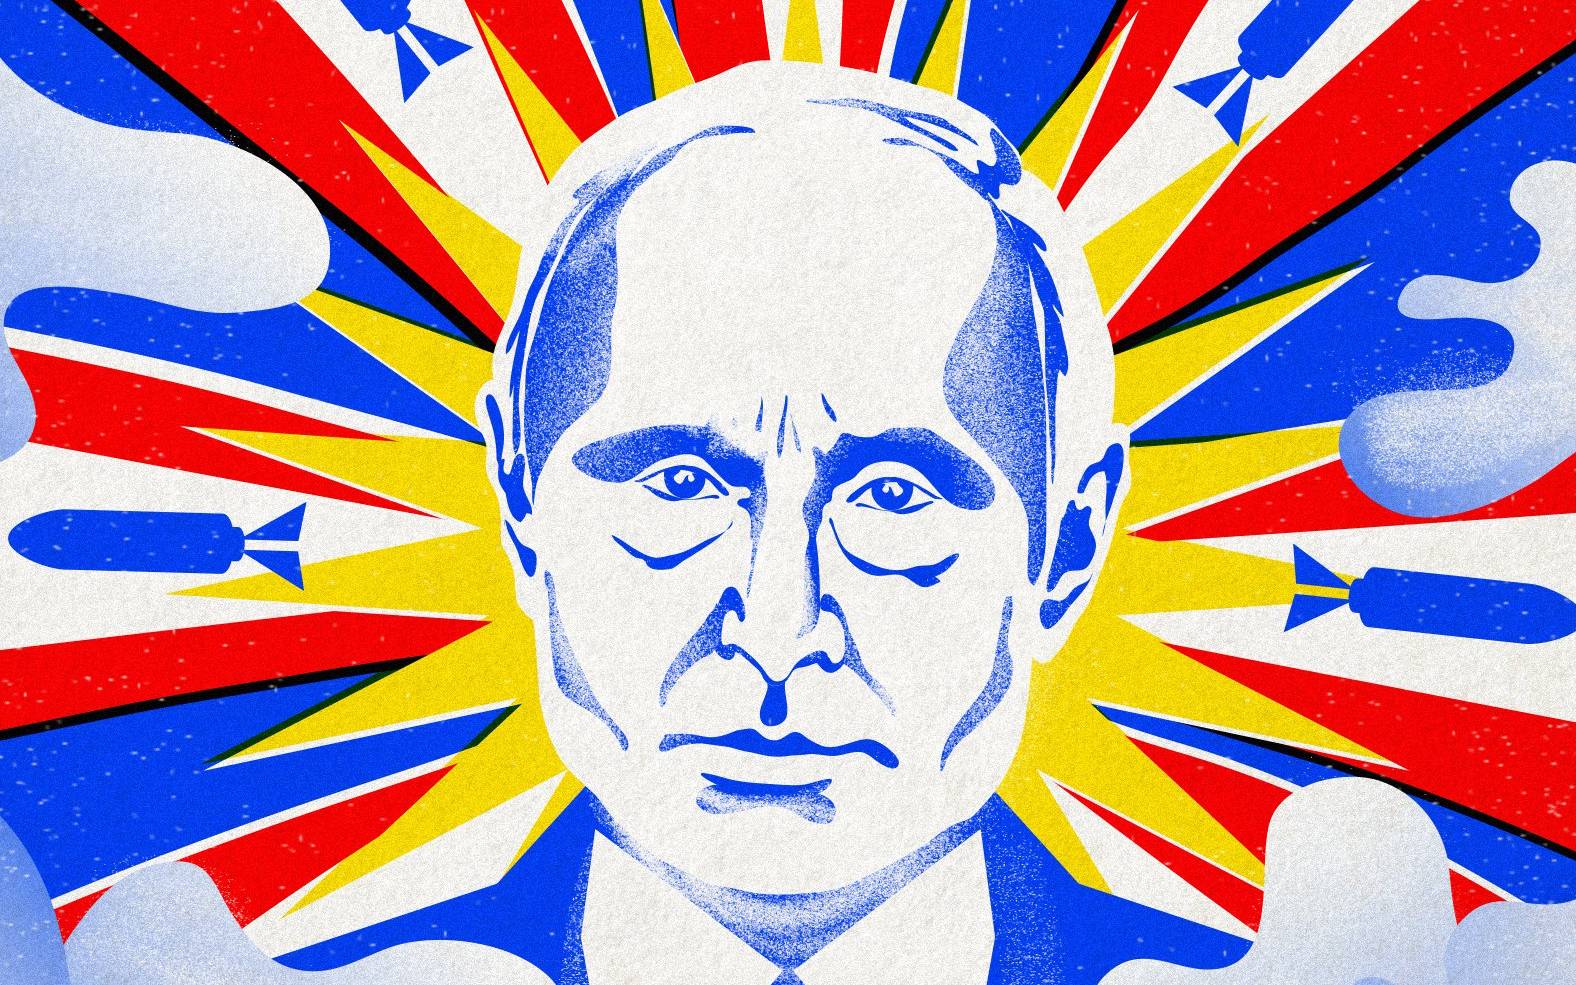 Grafika: niebeski Putin wyłaniający się z chmur w promieniach w kolorach rosyjskiej flagi, wśród rakiet i wybuchów